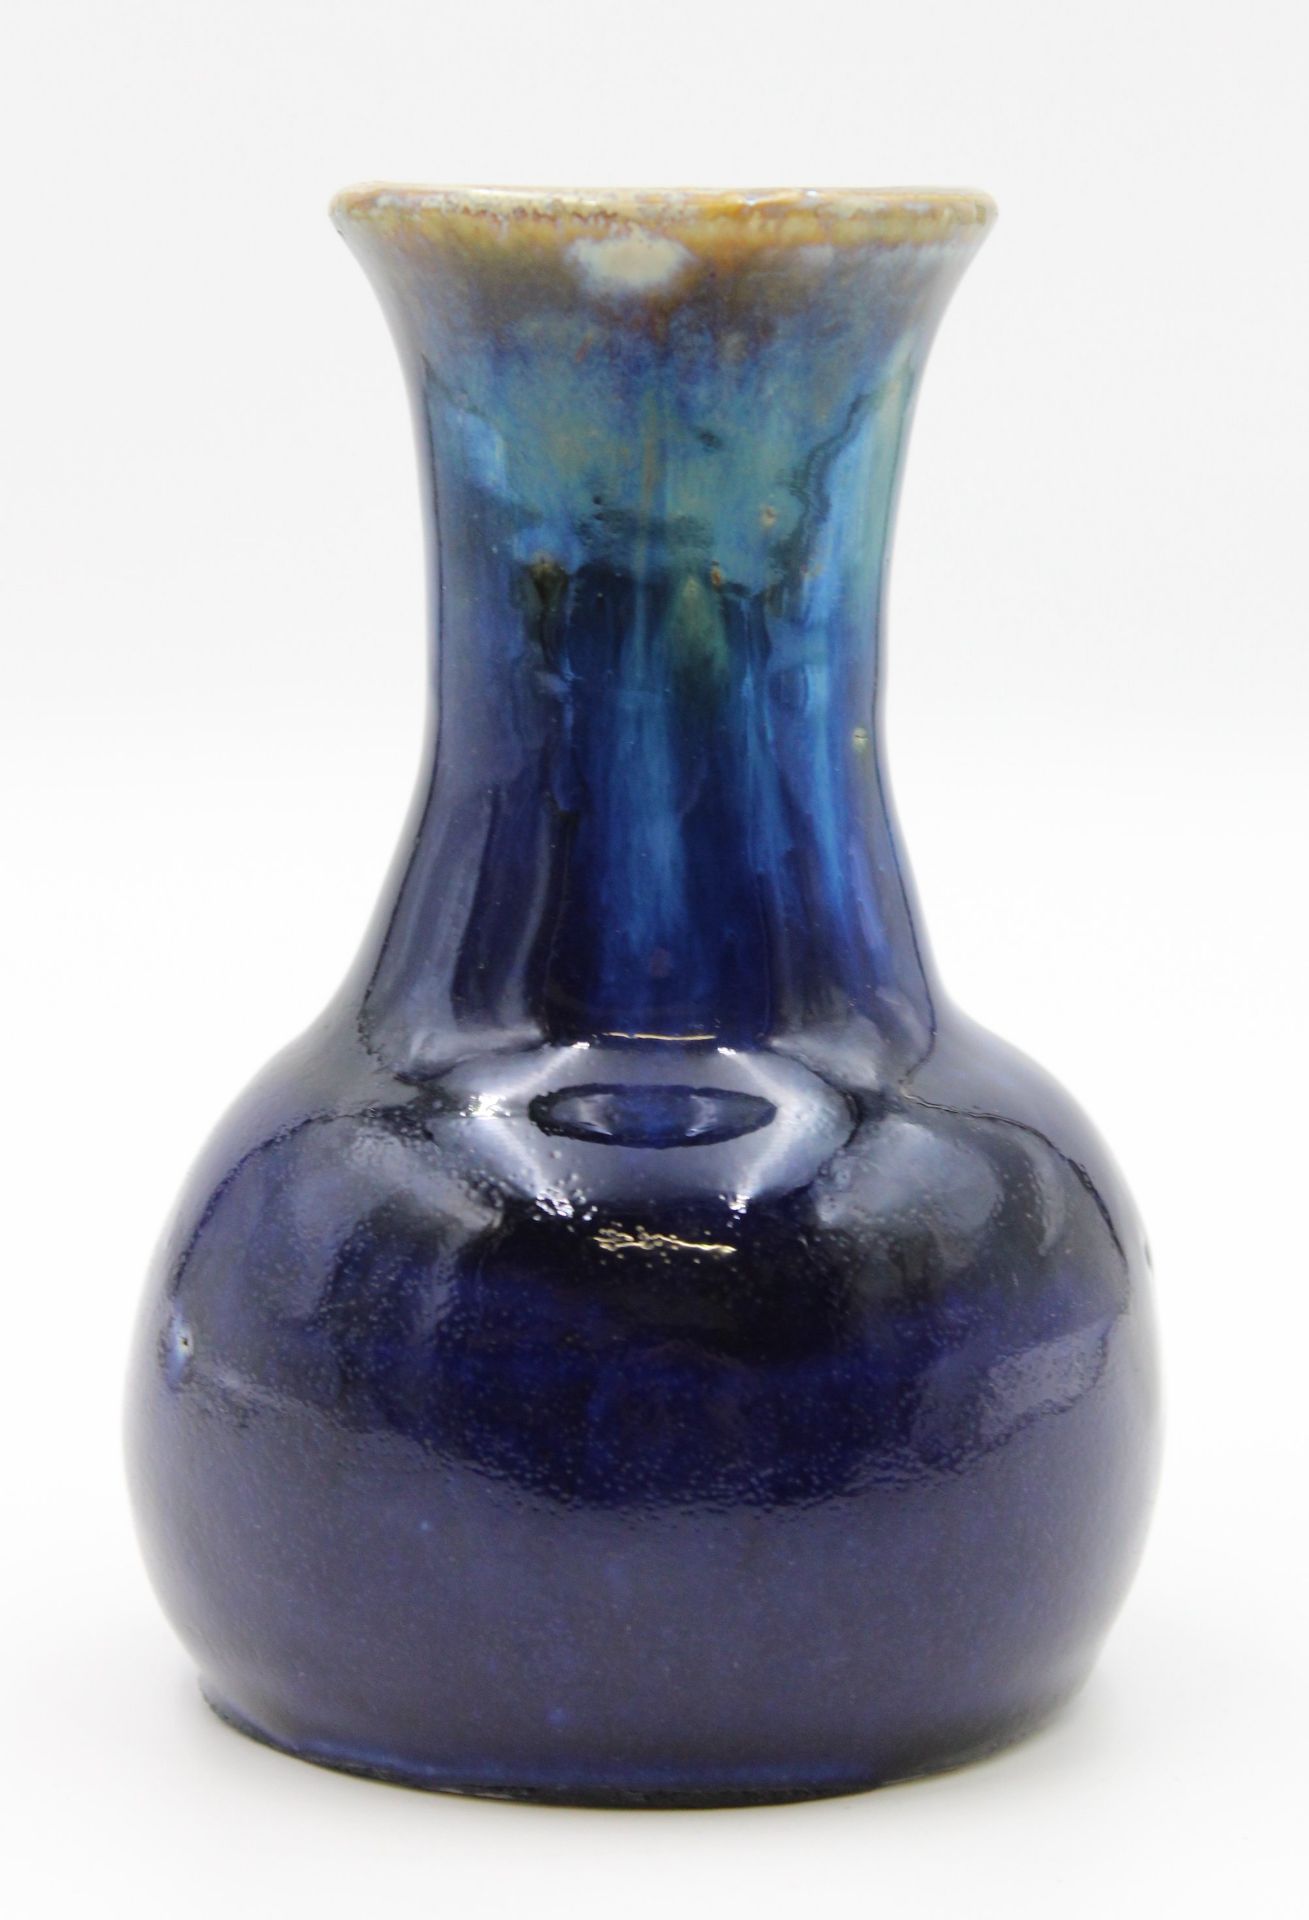 Vase, grauer Scherben blau glasiert, gemarkt "Sächsische Kunsttöpferei", oberer Rand mit Glasurabpl